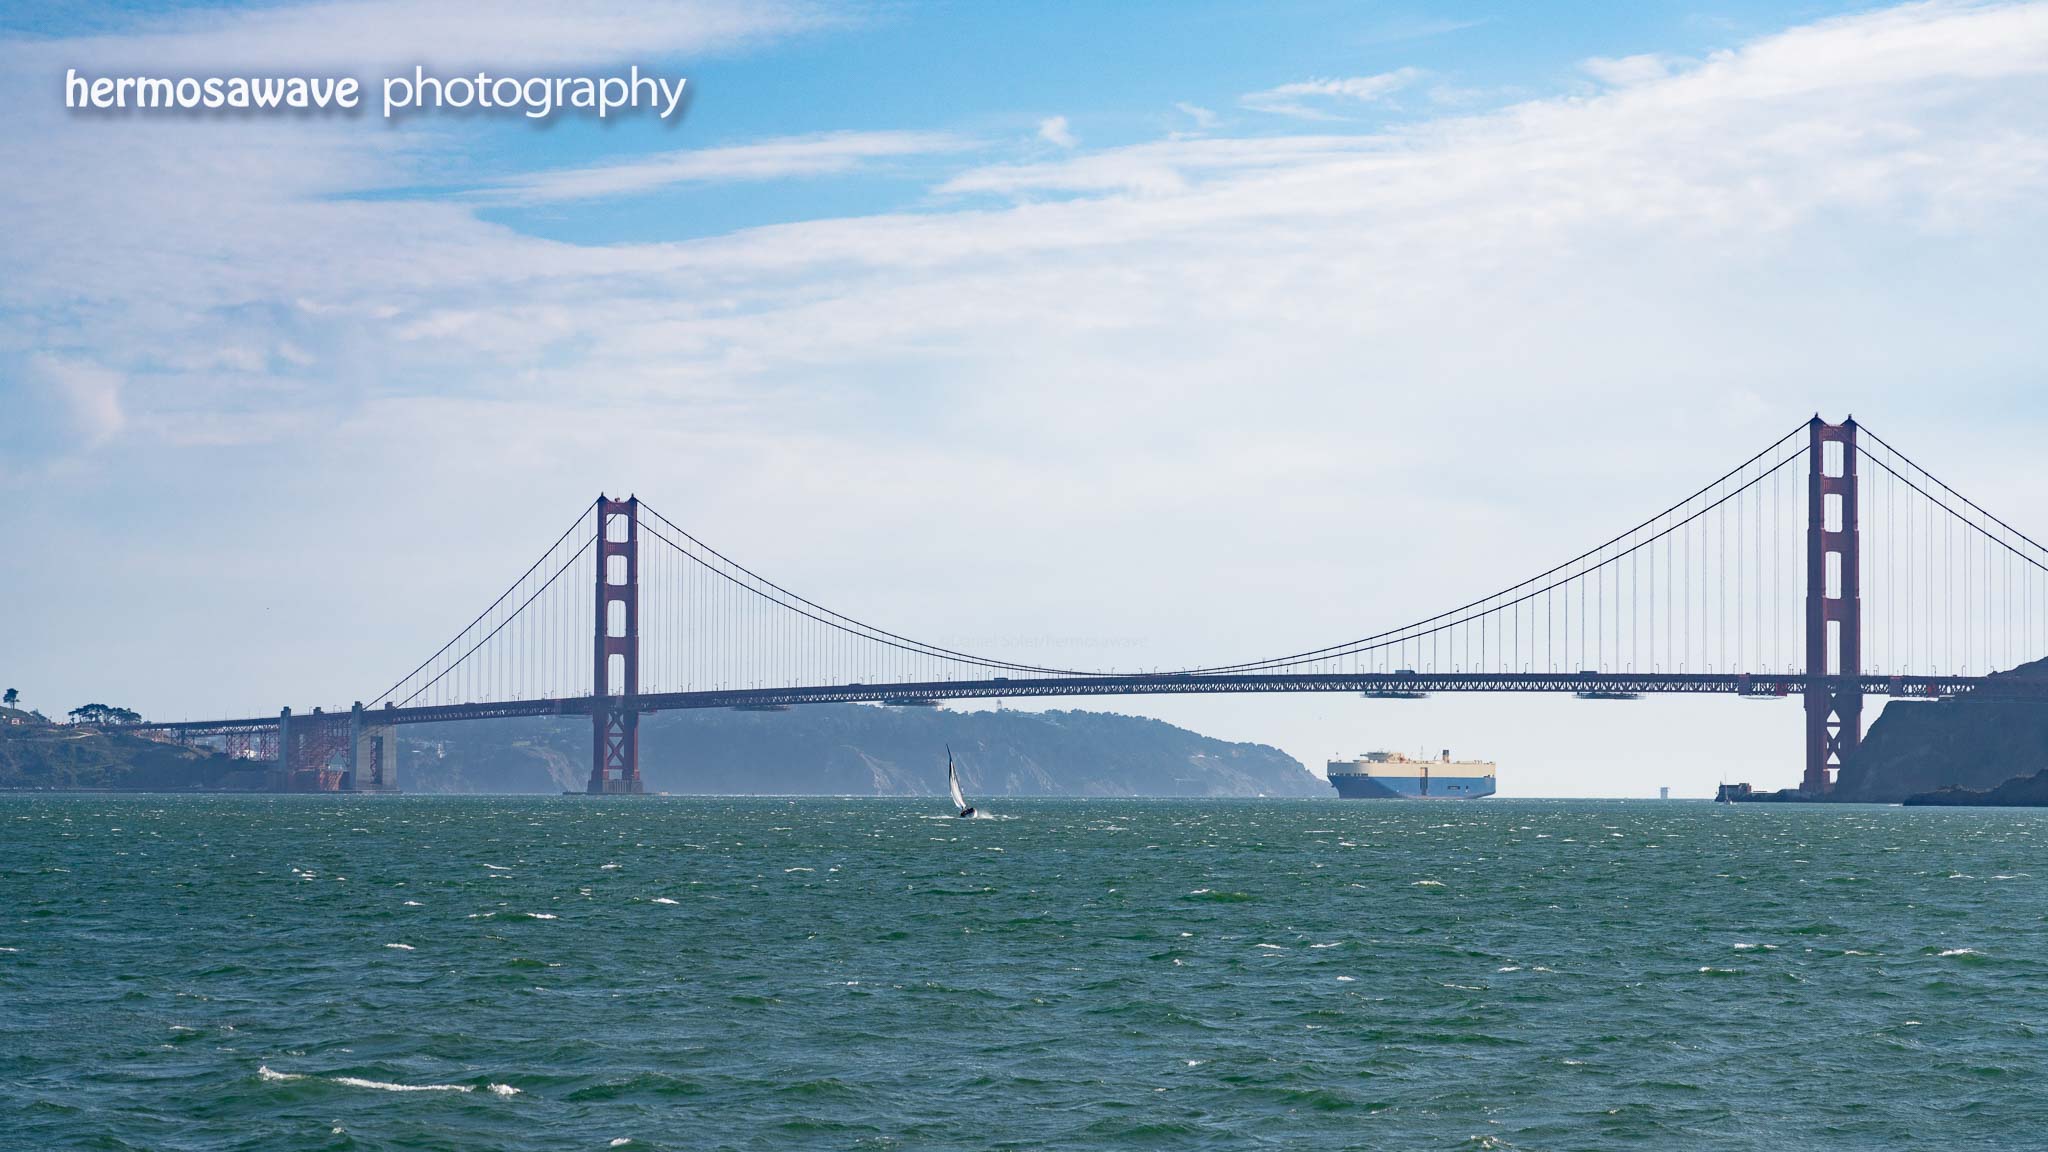 Through the Golden Gate